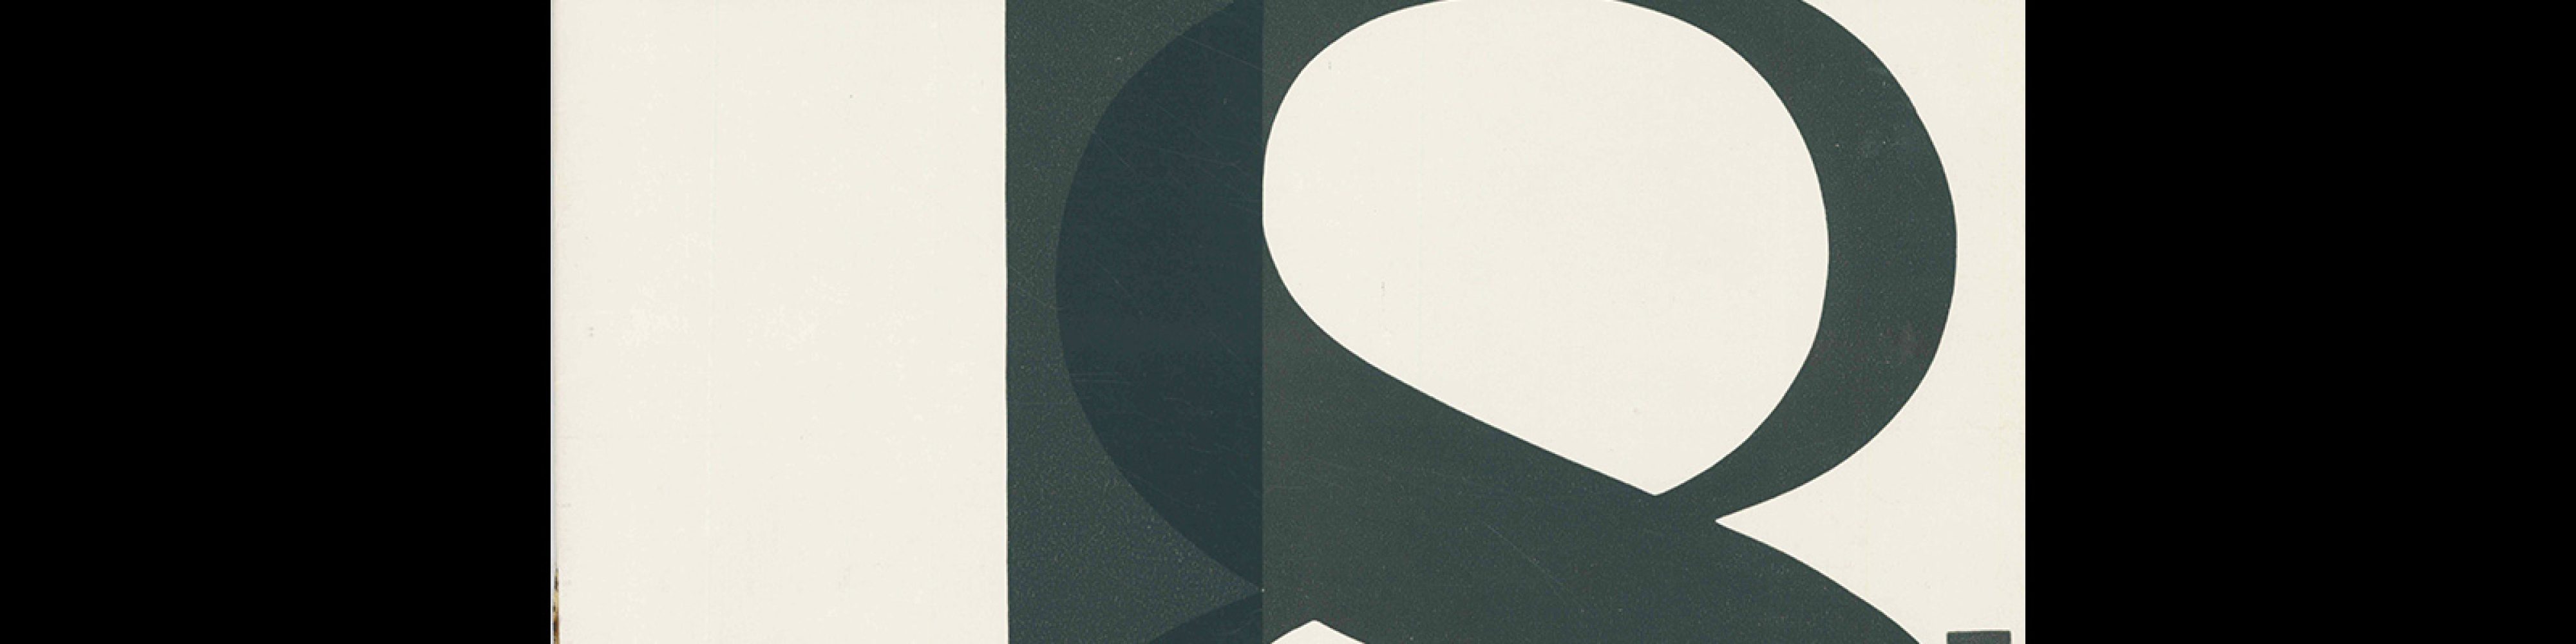 Typografia, ročník 68, 08, 1965. Cover design by Vladislav Najbrt